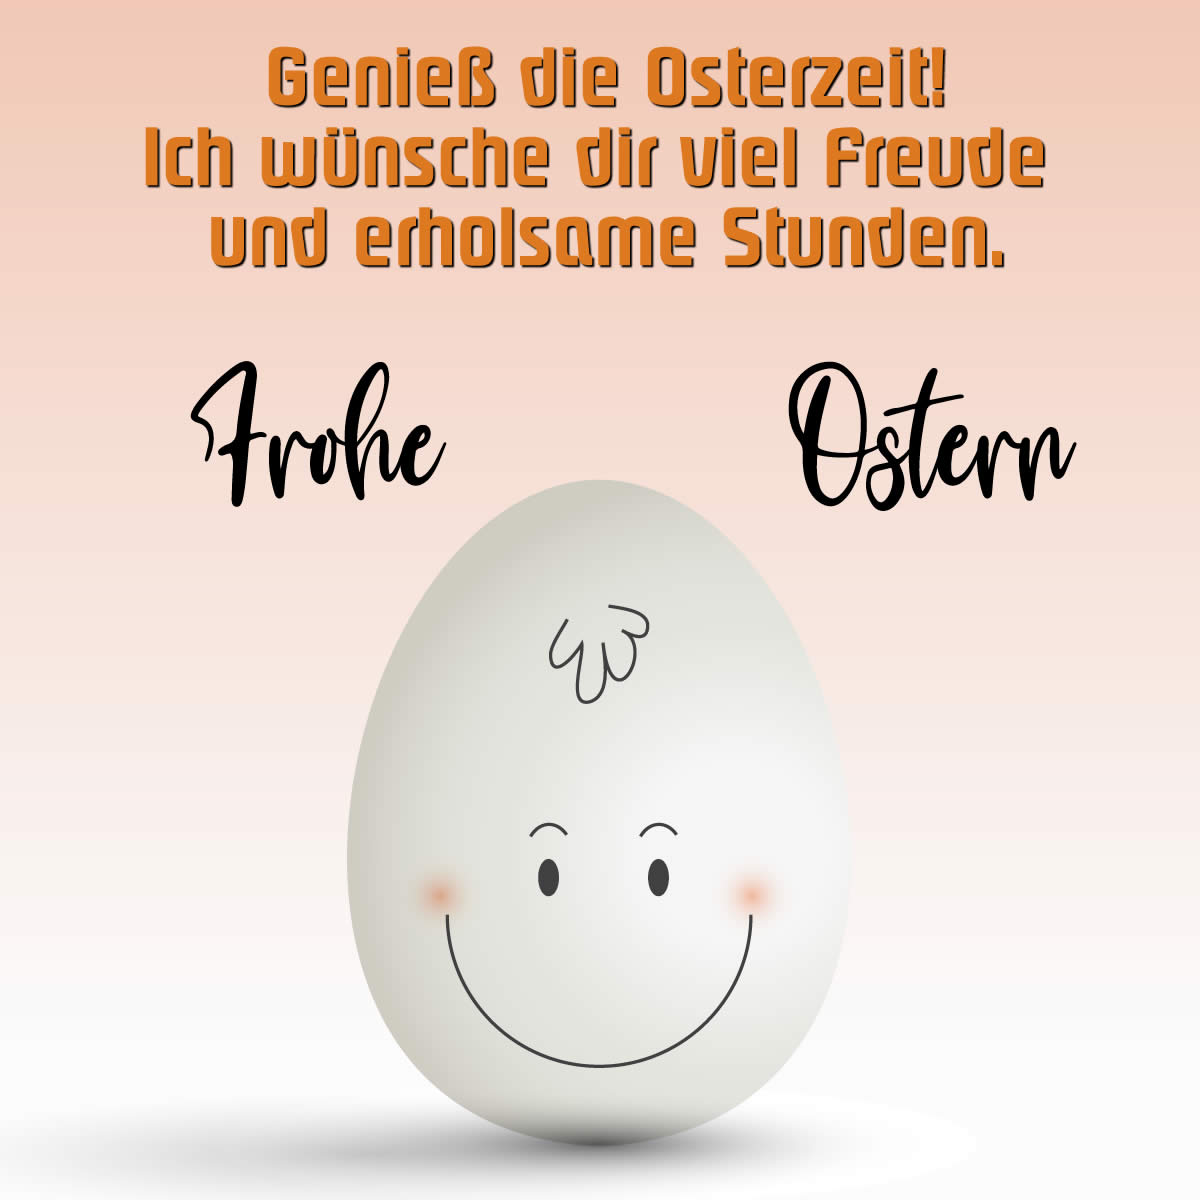 Bild mit Text: Genieß die Osterzeit!Ich wünsche dir viel Freude und erholsame Stunden.Frohe Ostern!